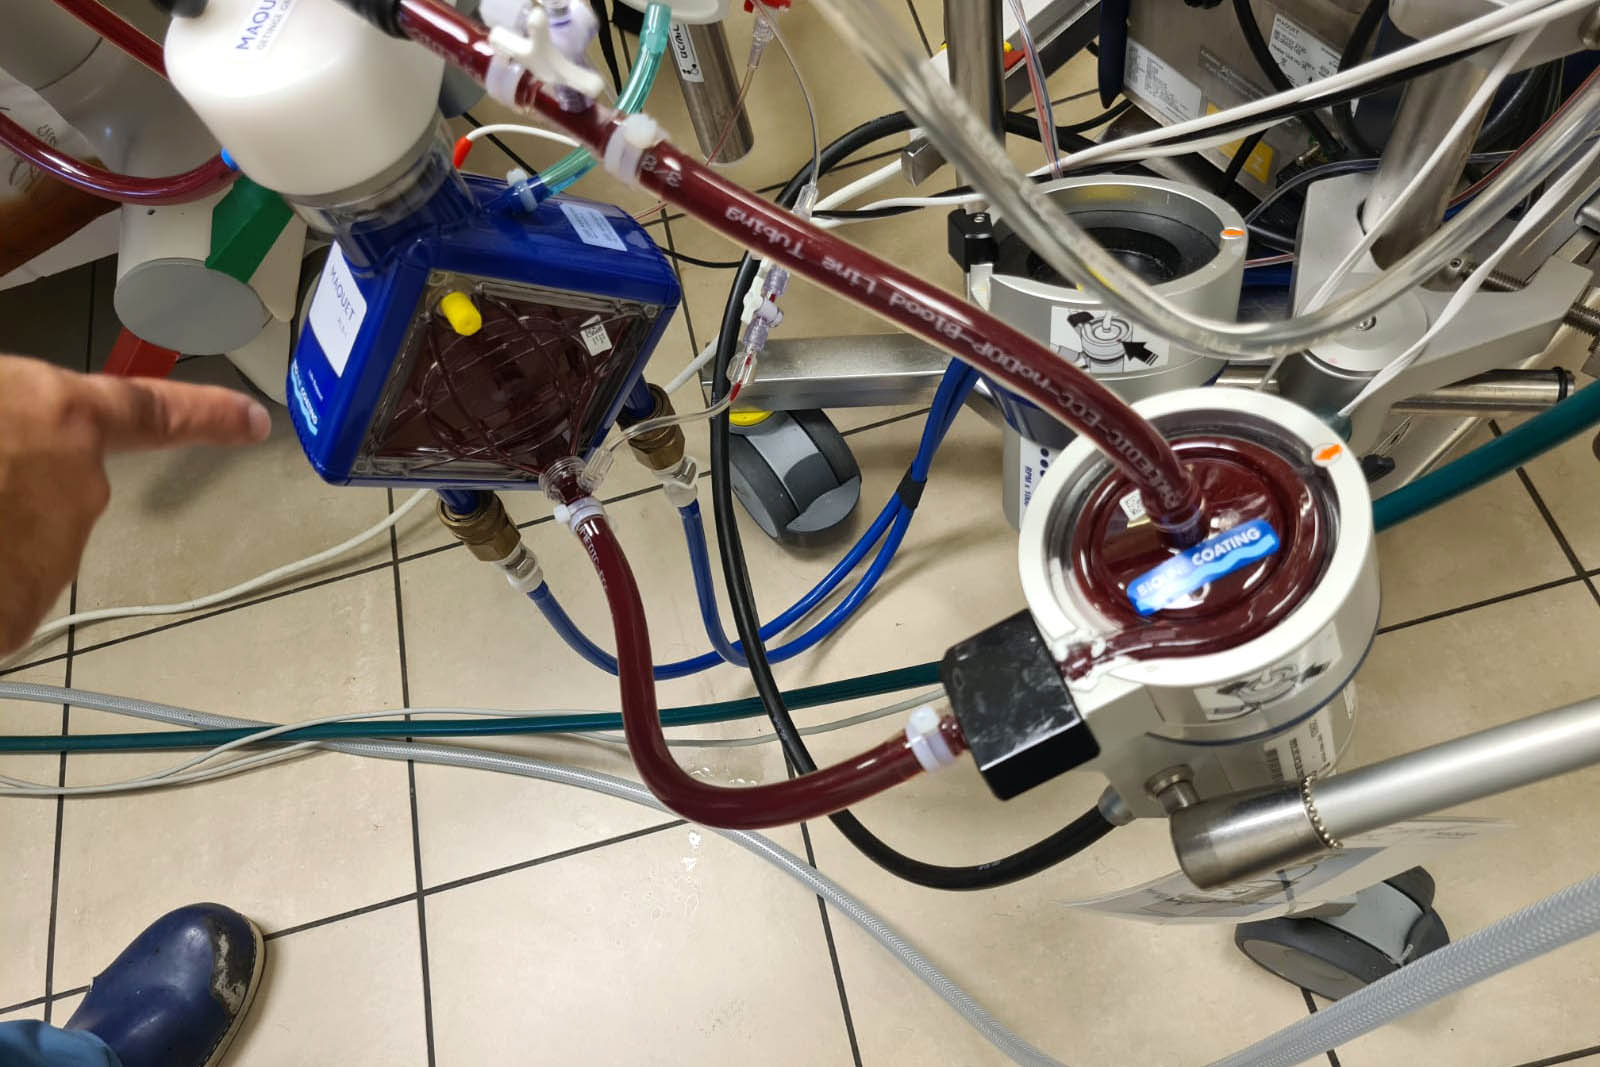 جهاز إكمو قيد الاستخدام: قلب صناعي من الجهة اليمنى، رئة صناعية من الجهة اليسرى (تصوير: دافنا إيزبروخ)